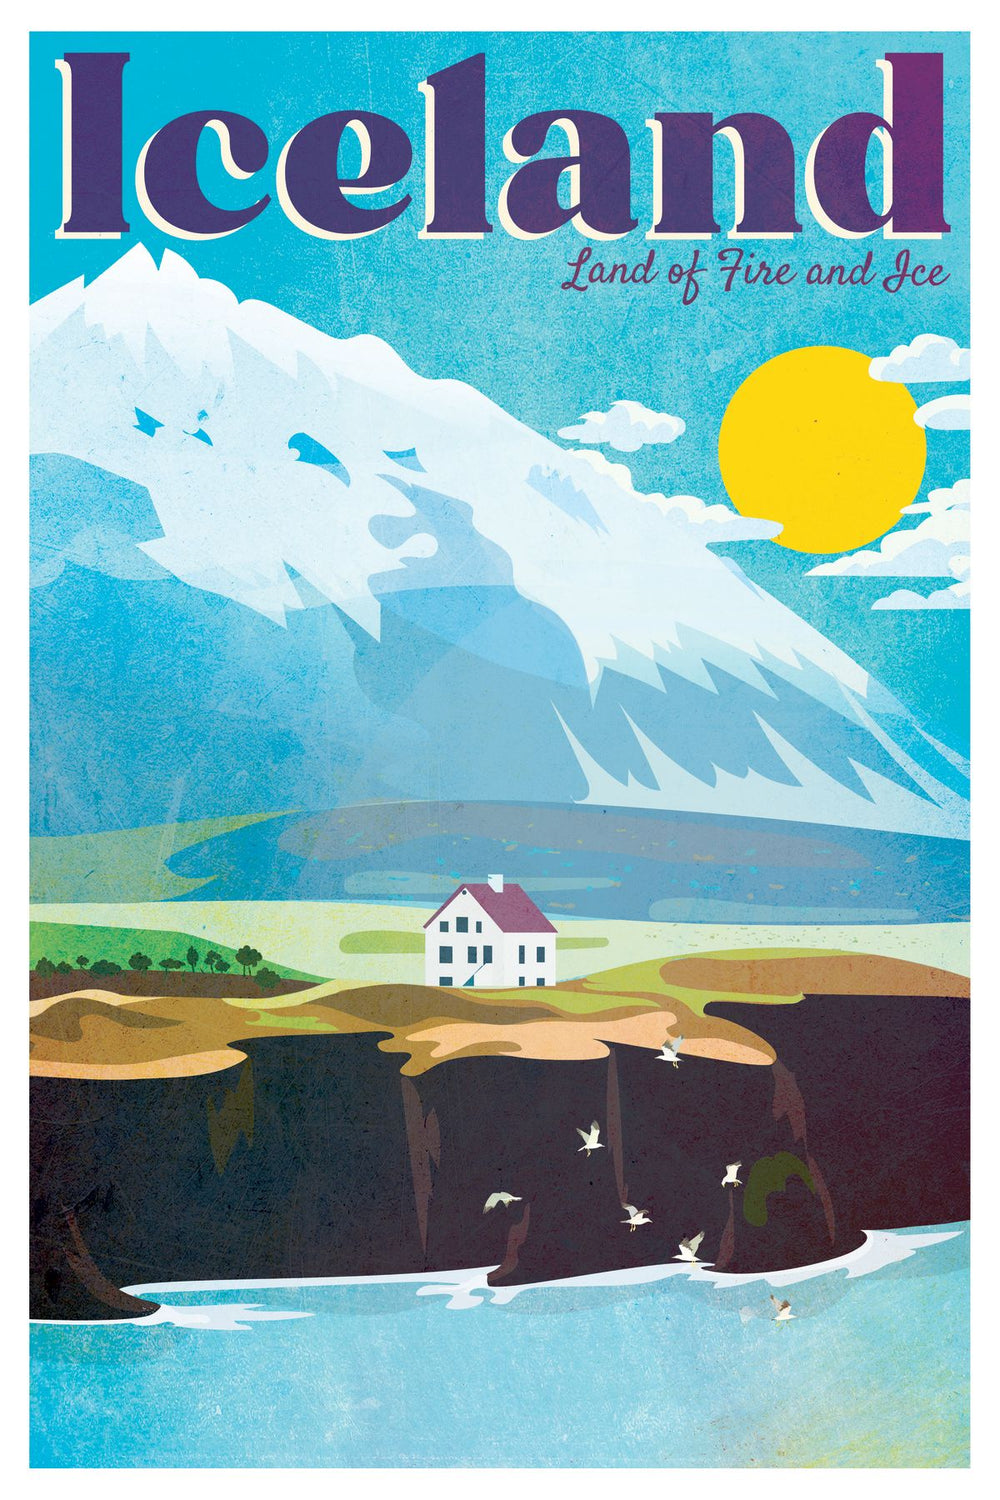 Iceland Tourism Vintage Poster